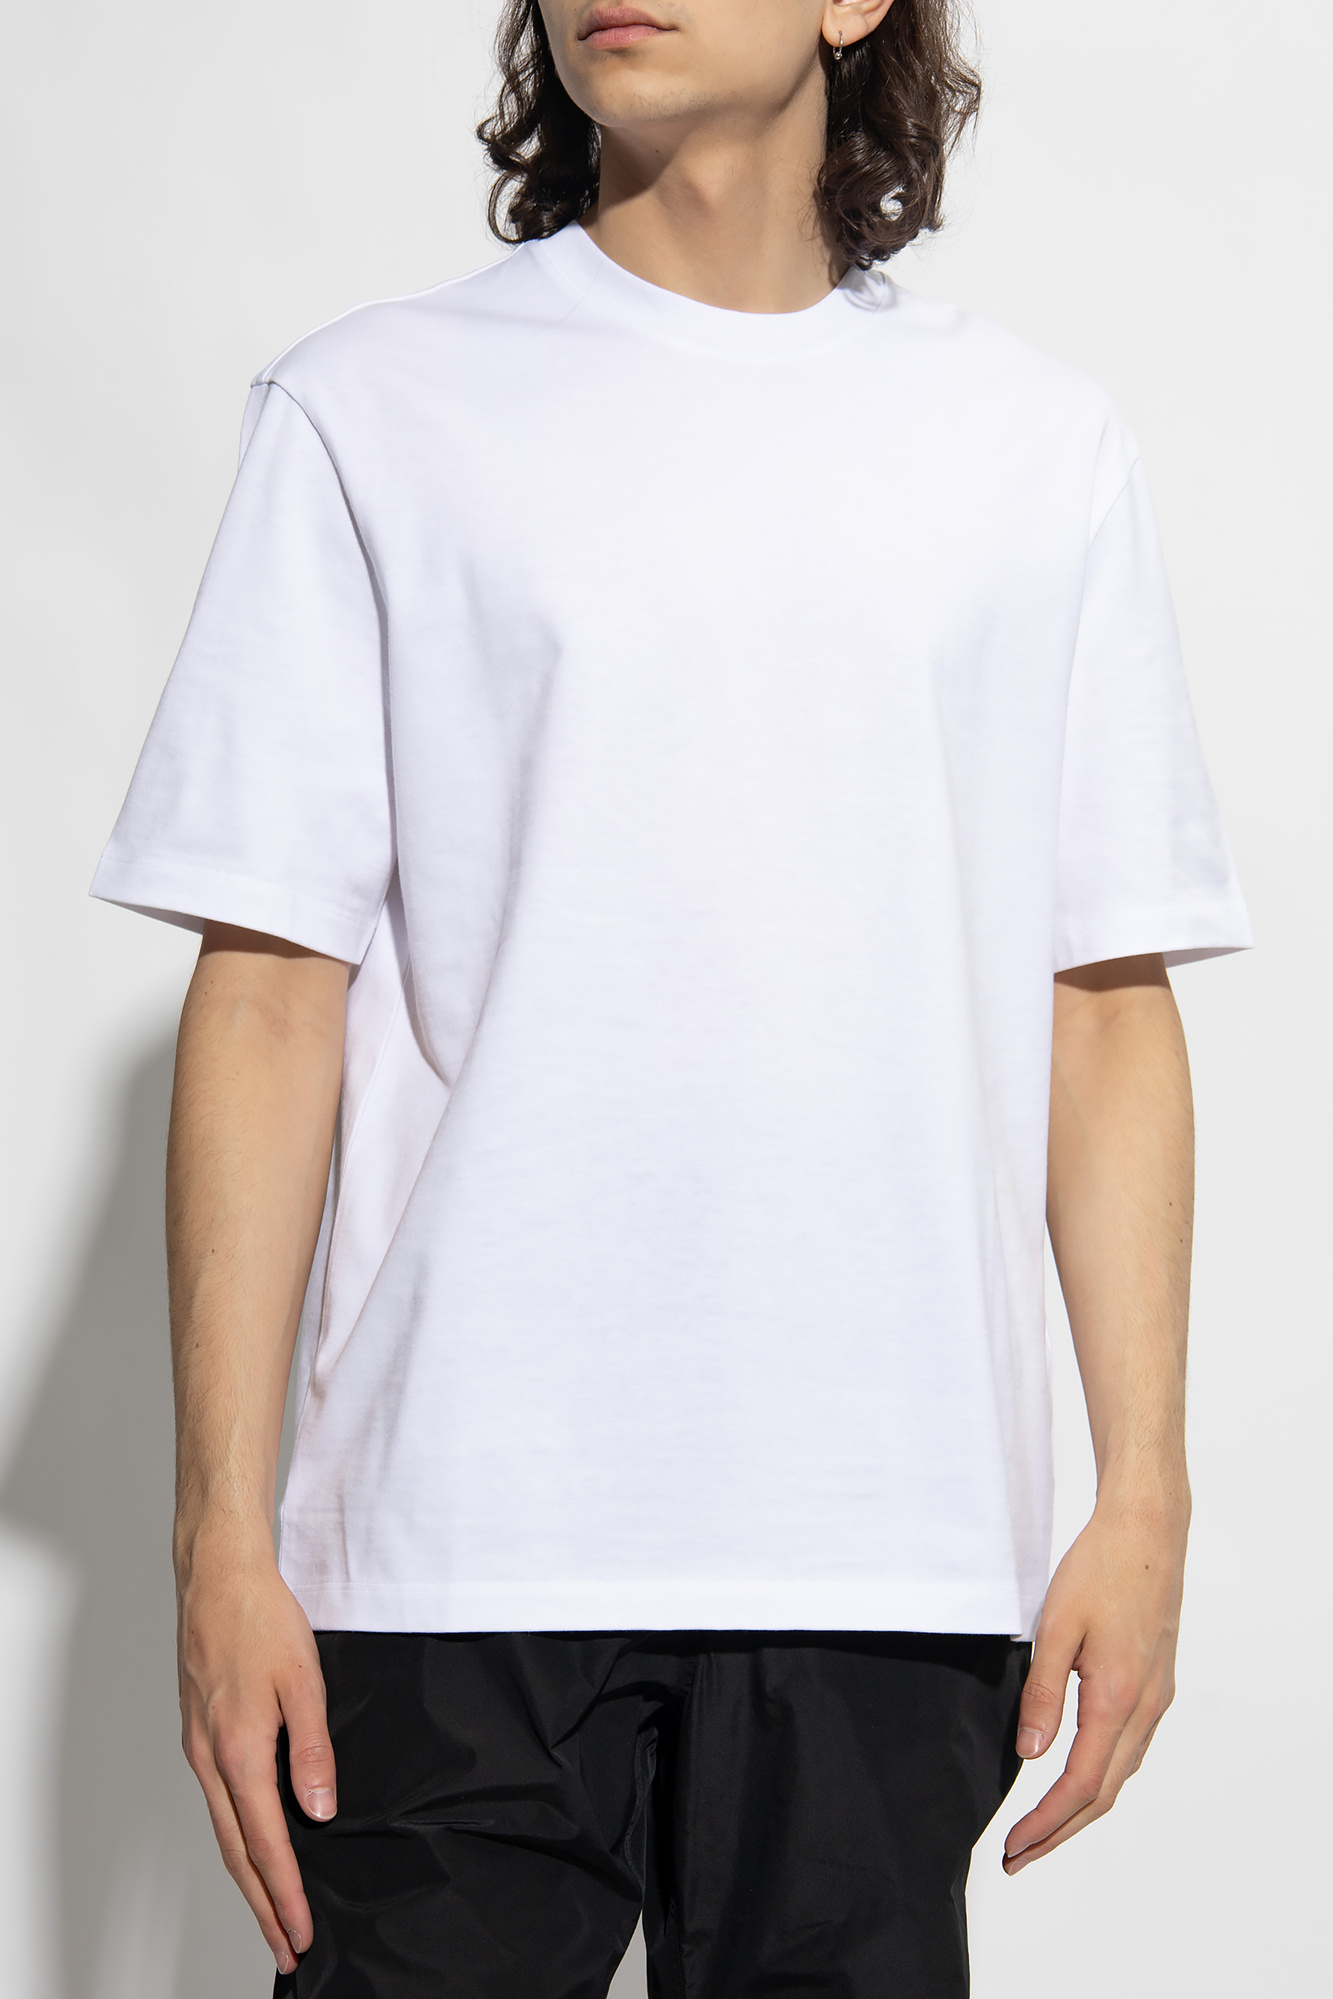 Ferragamo Crew-neck T-shirt in White for Men